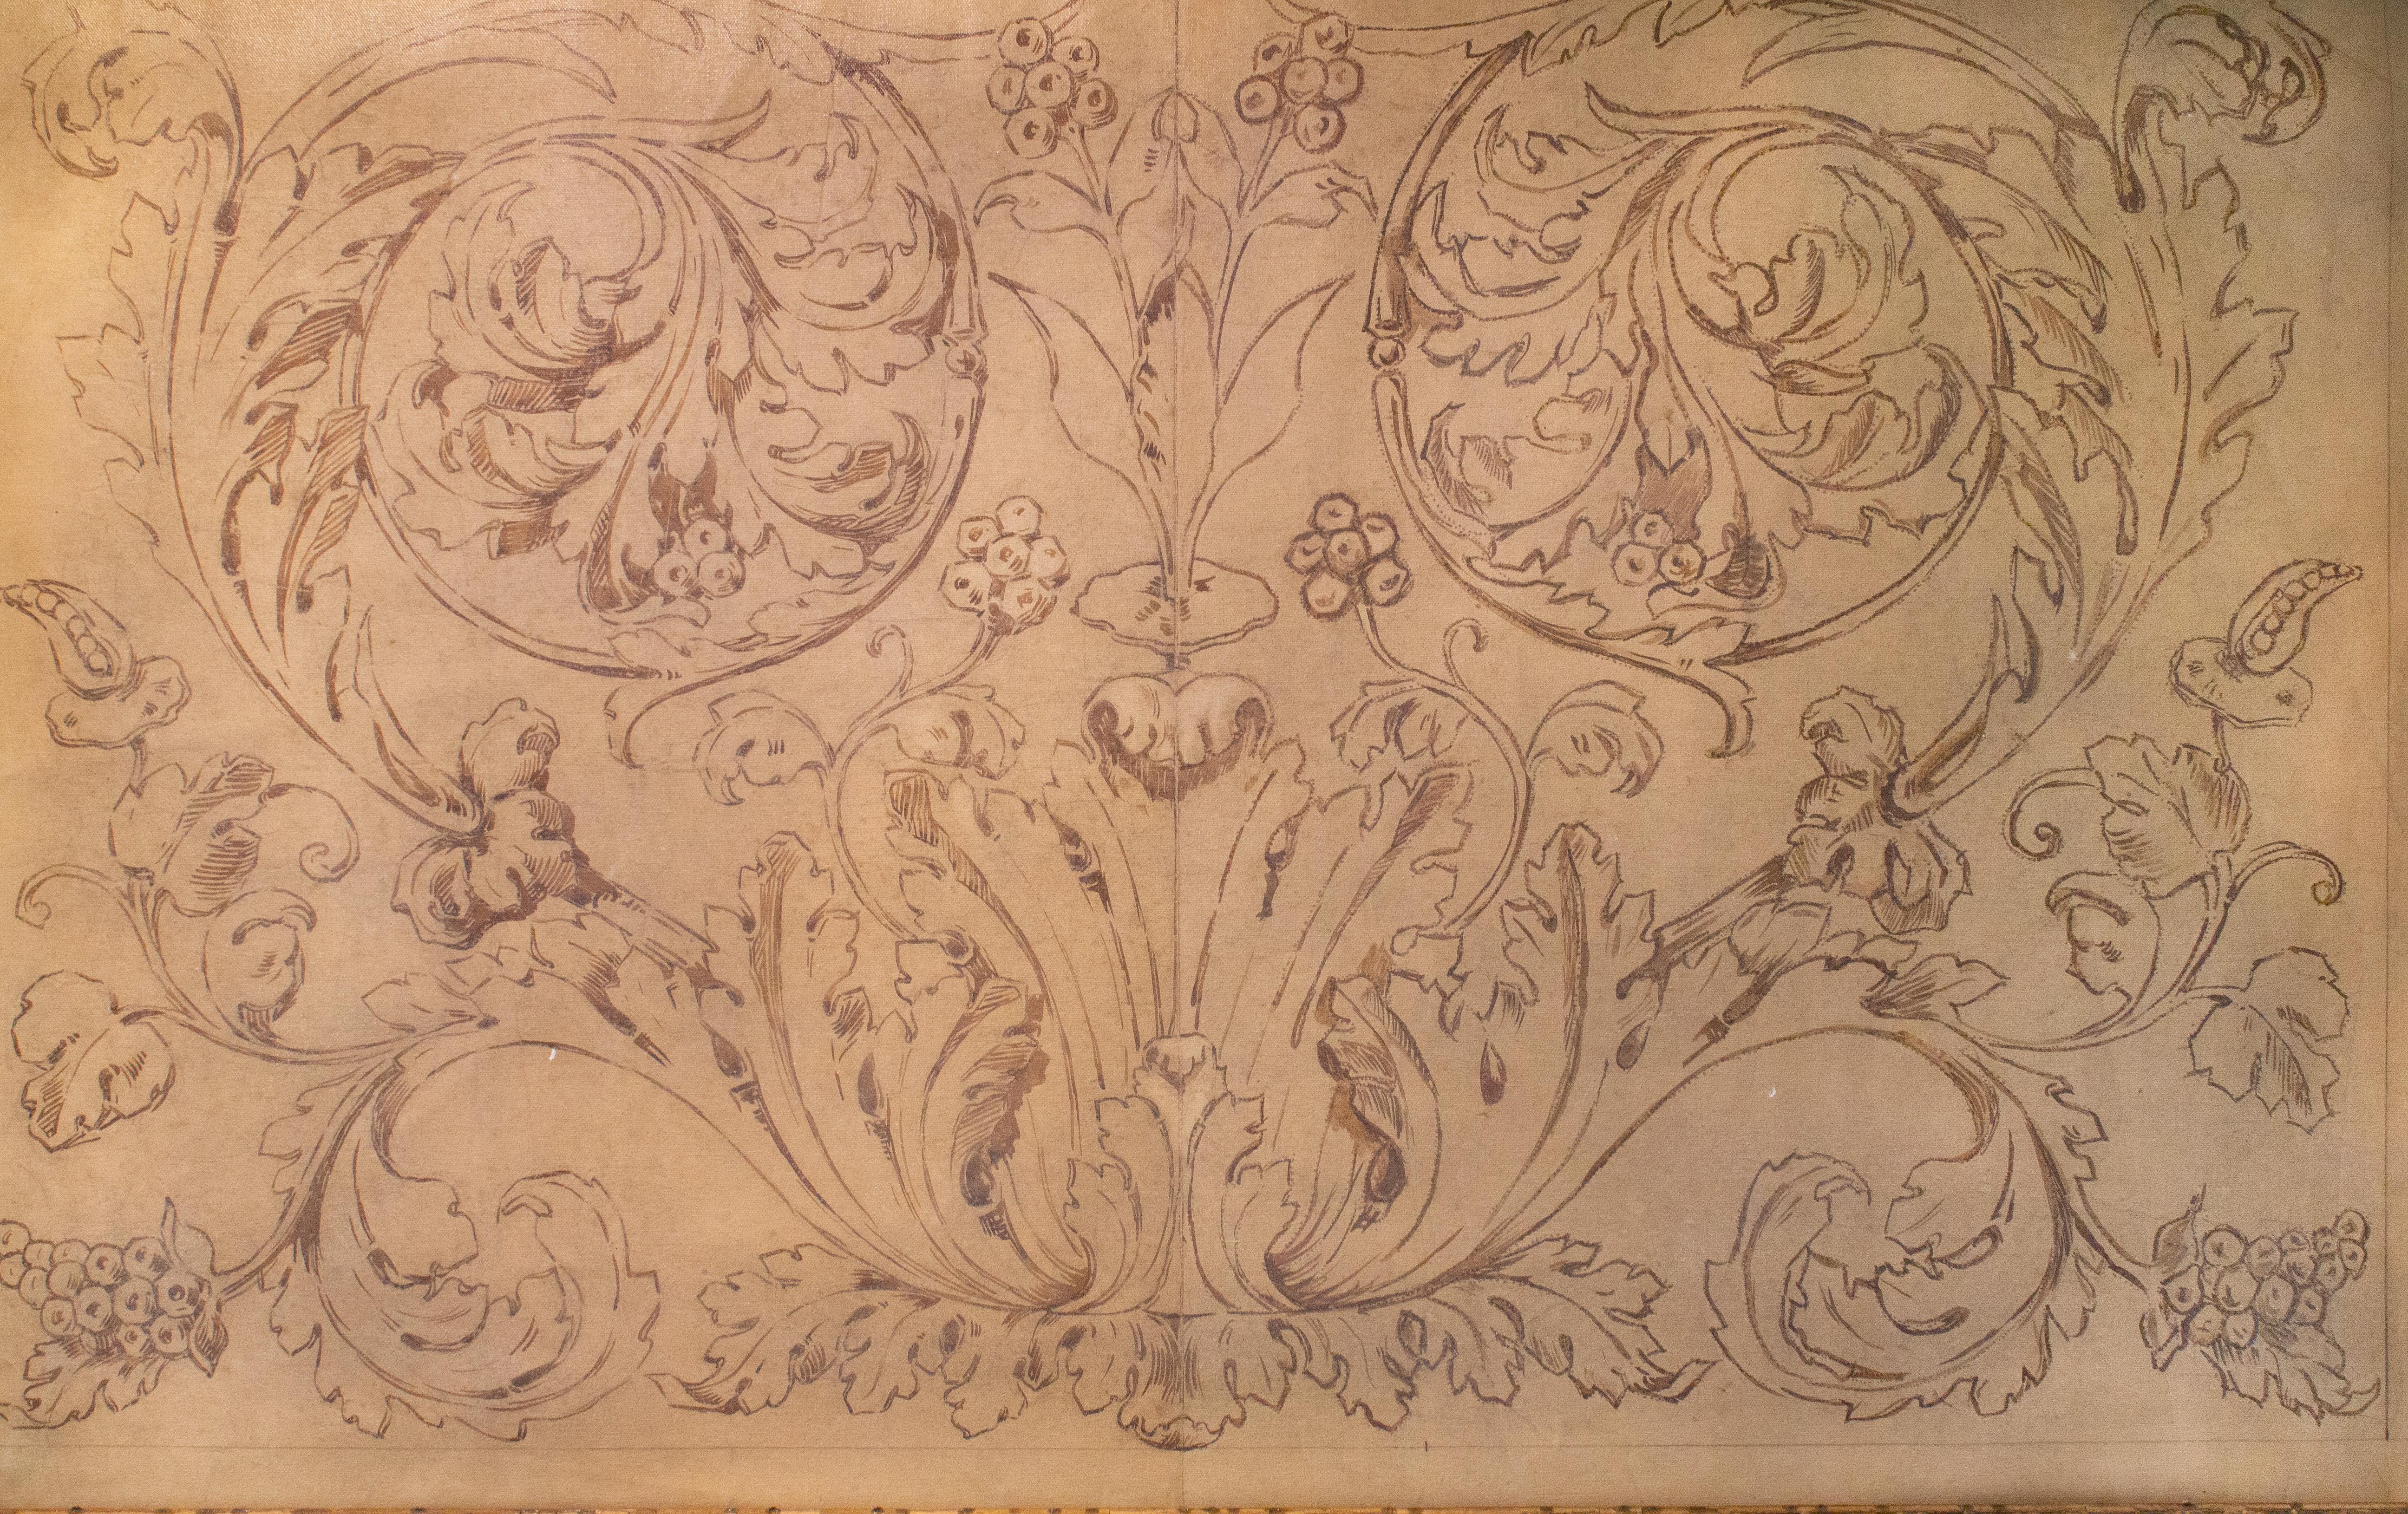 Italienisches Spolvero-Fresko aus dem 18. Jahrhundert, gedruckt auf Leinwand und gerahmt in einem antiken Holzrahmen.

Spolvero ist eine künstlerische Methode zur Übertragung eines Designs von einem Druck auf die vorbereitete Oberfläche einer